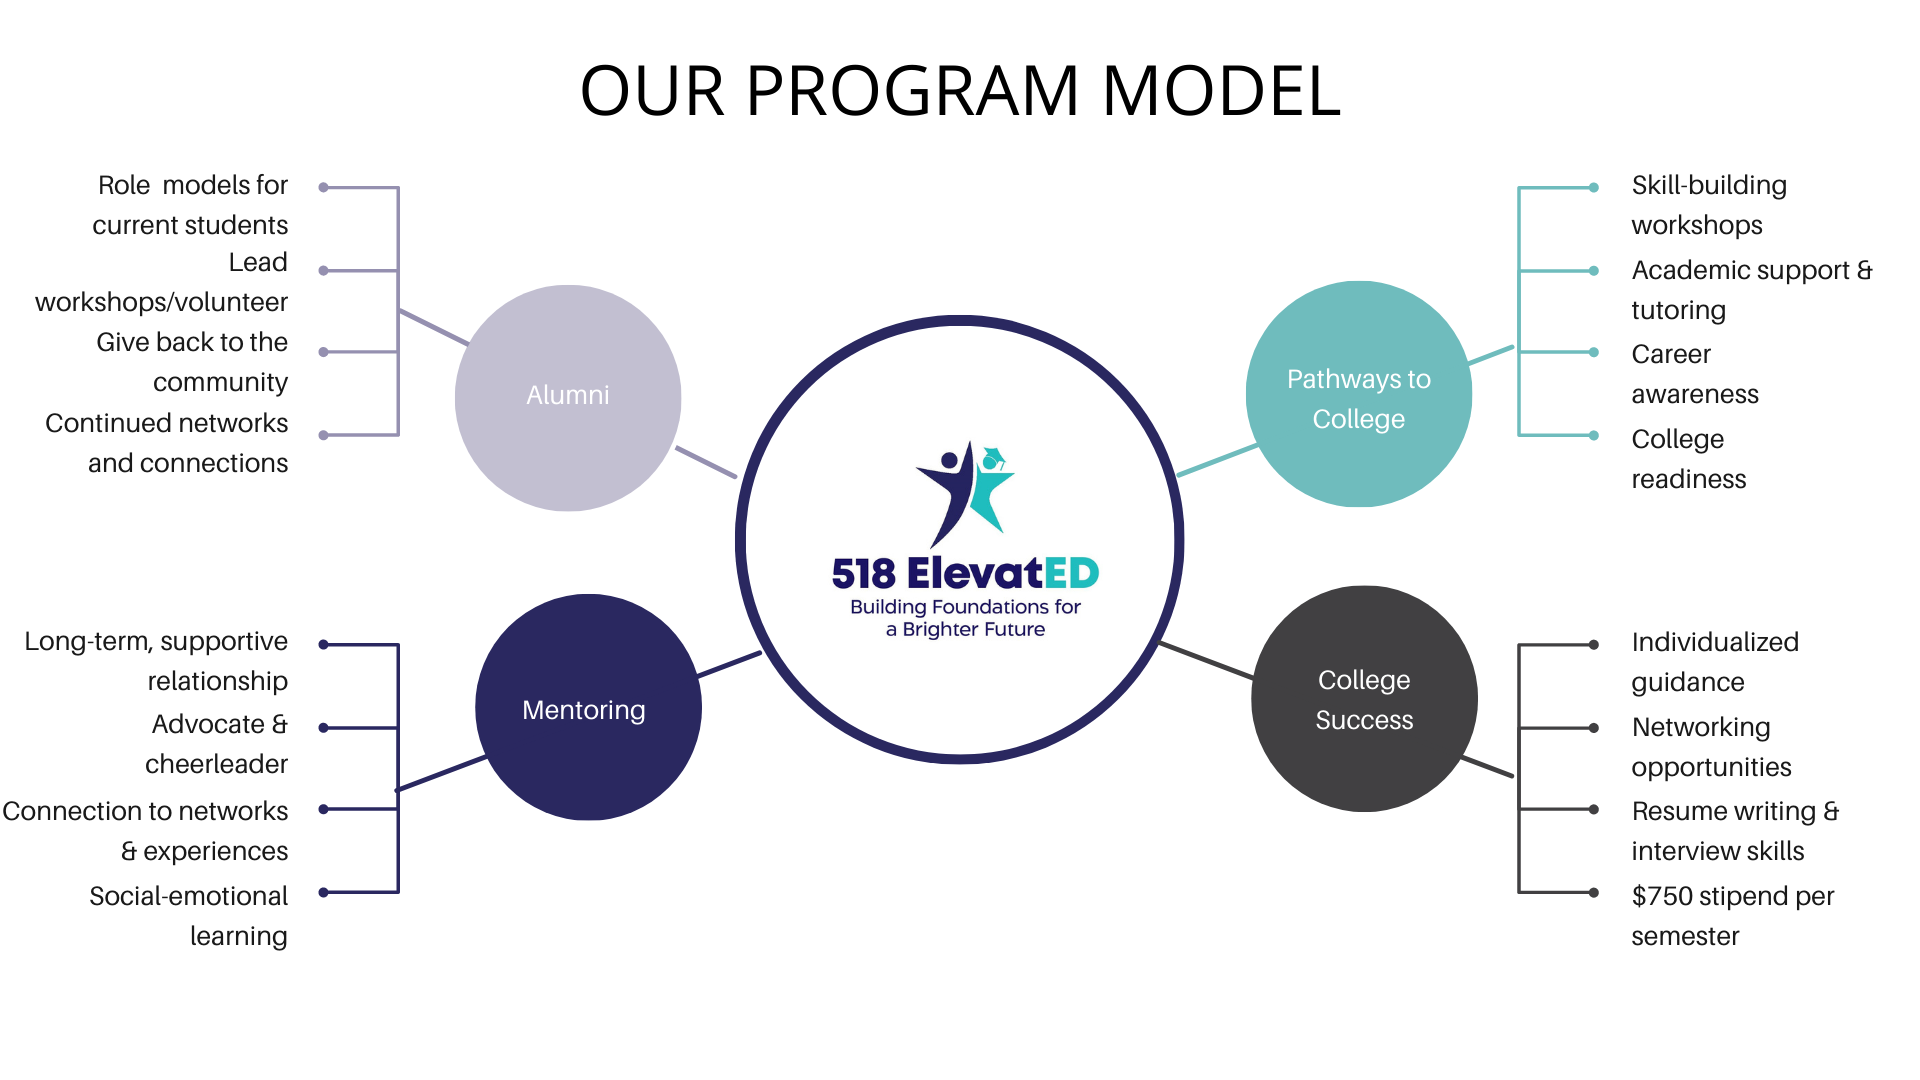 Our Program Model